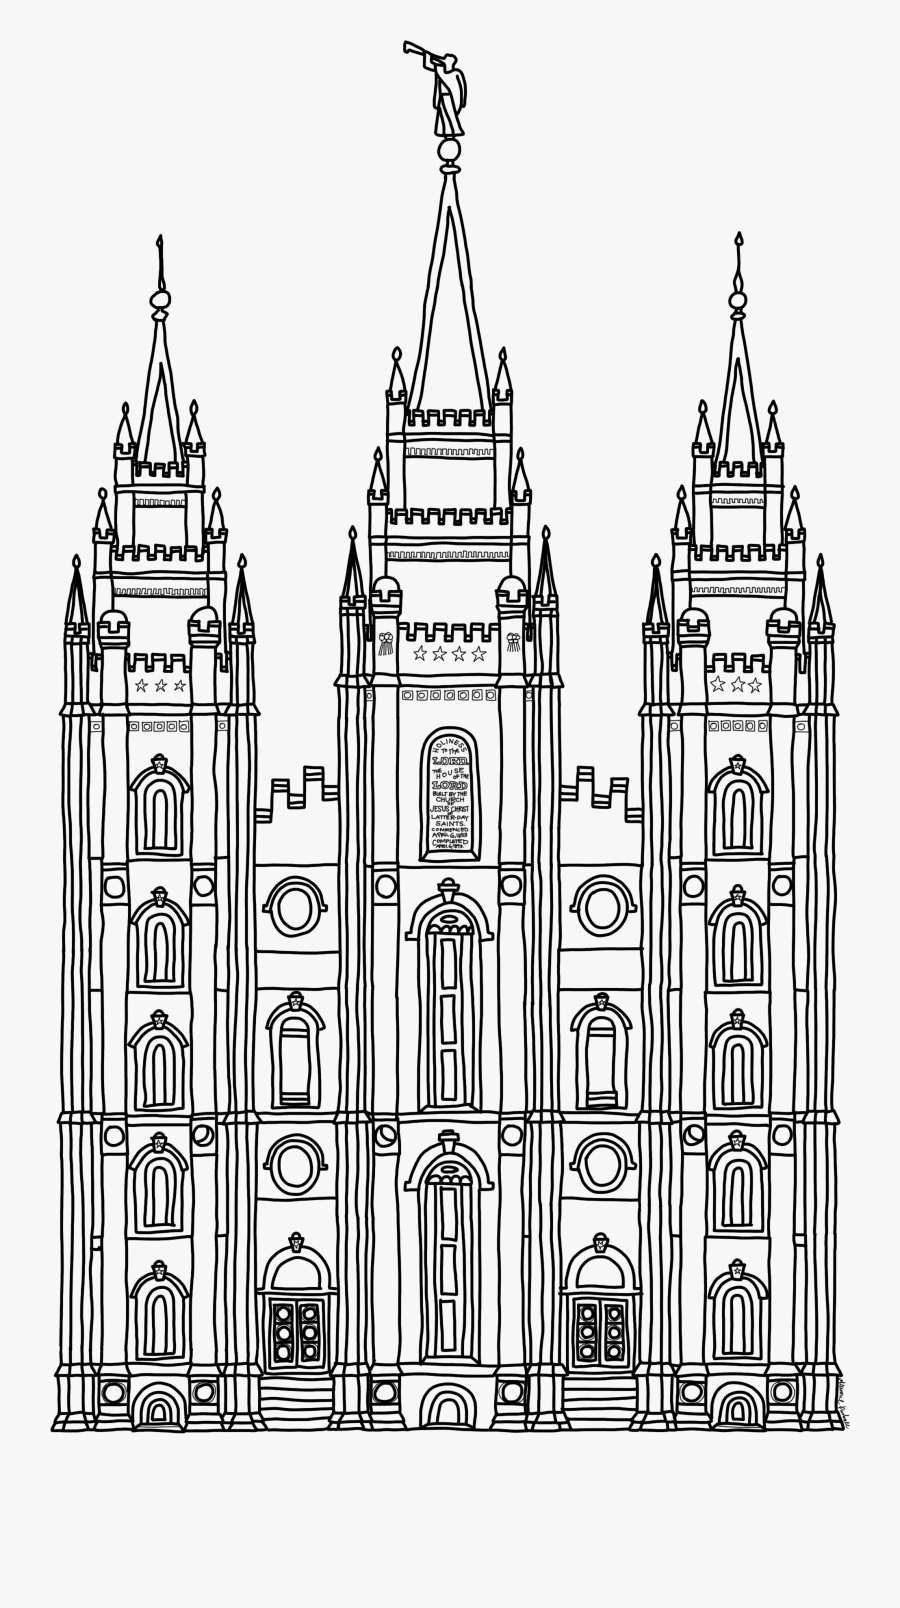 Salt Lake Temple - Lds Salt Lake Temple Clip Art, Transparent Clipart